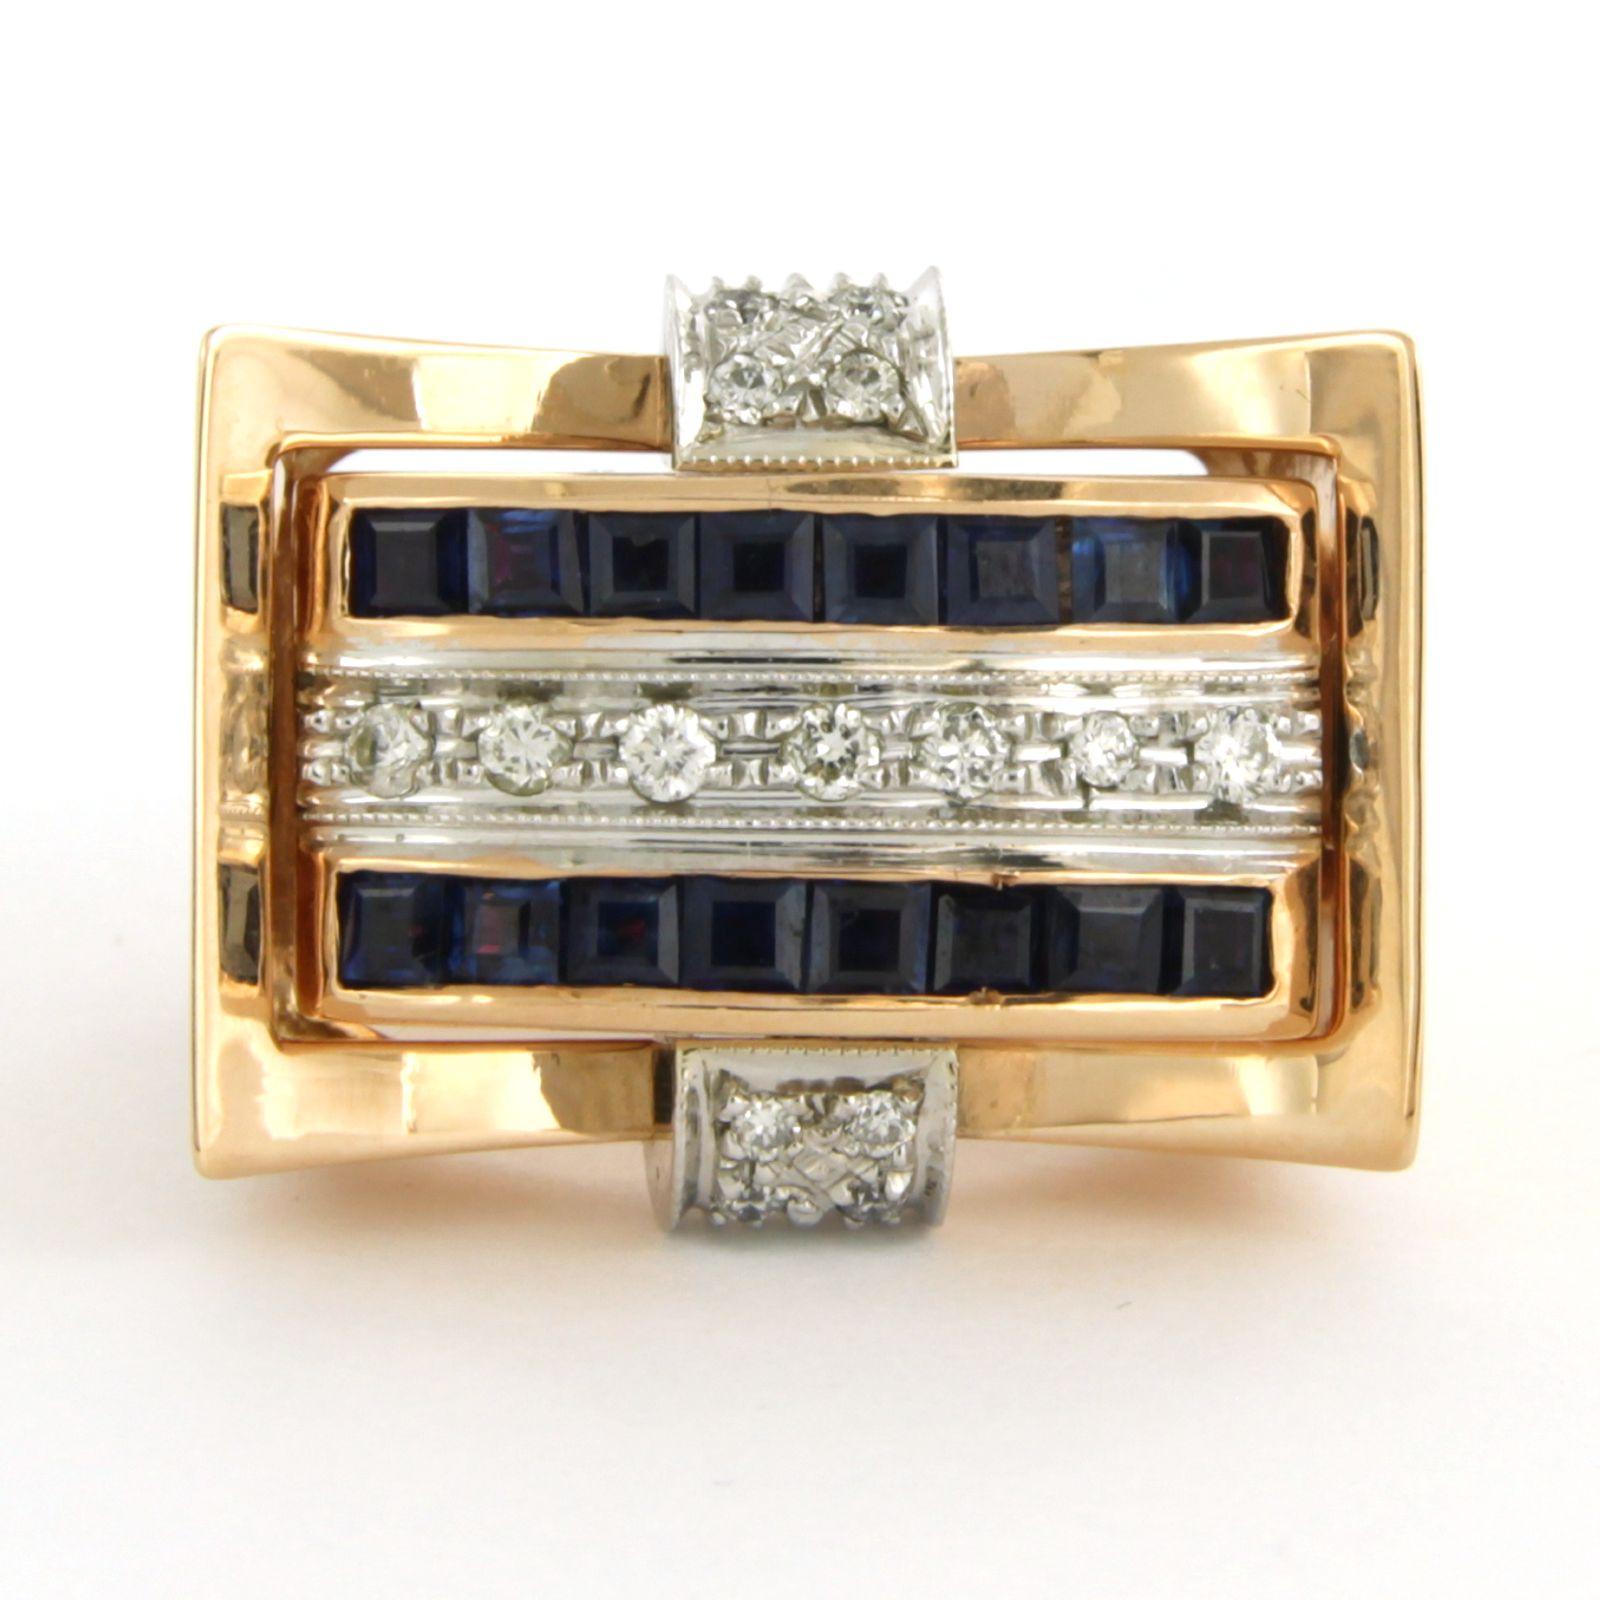 RETRO Ring aus 18 Karat Bicolor-Gold, besetzt mit Rubin, Saphir und Diamant im Brillantschliff. 0.25ct - F/G - VS/SI - Ringgröße U.S. 7.5 - EU. 17.75(56)

detaillierte Beschreibung:

Die Oberseite des Rings ist rechteckig, 1,8 cm mal 2,2 cm breit